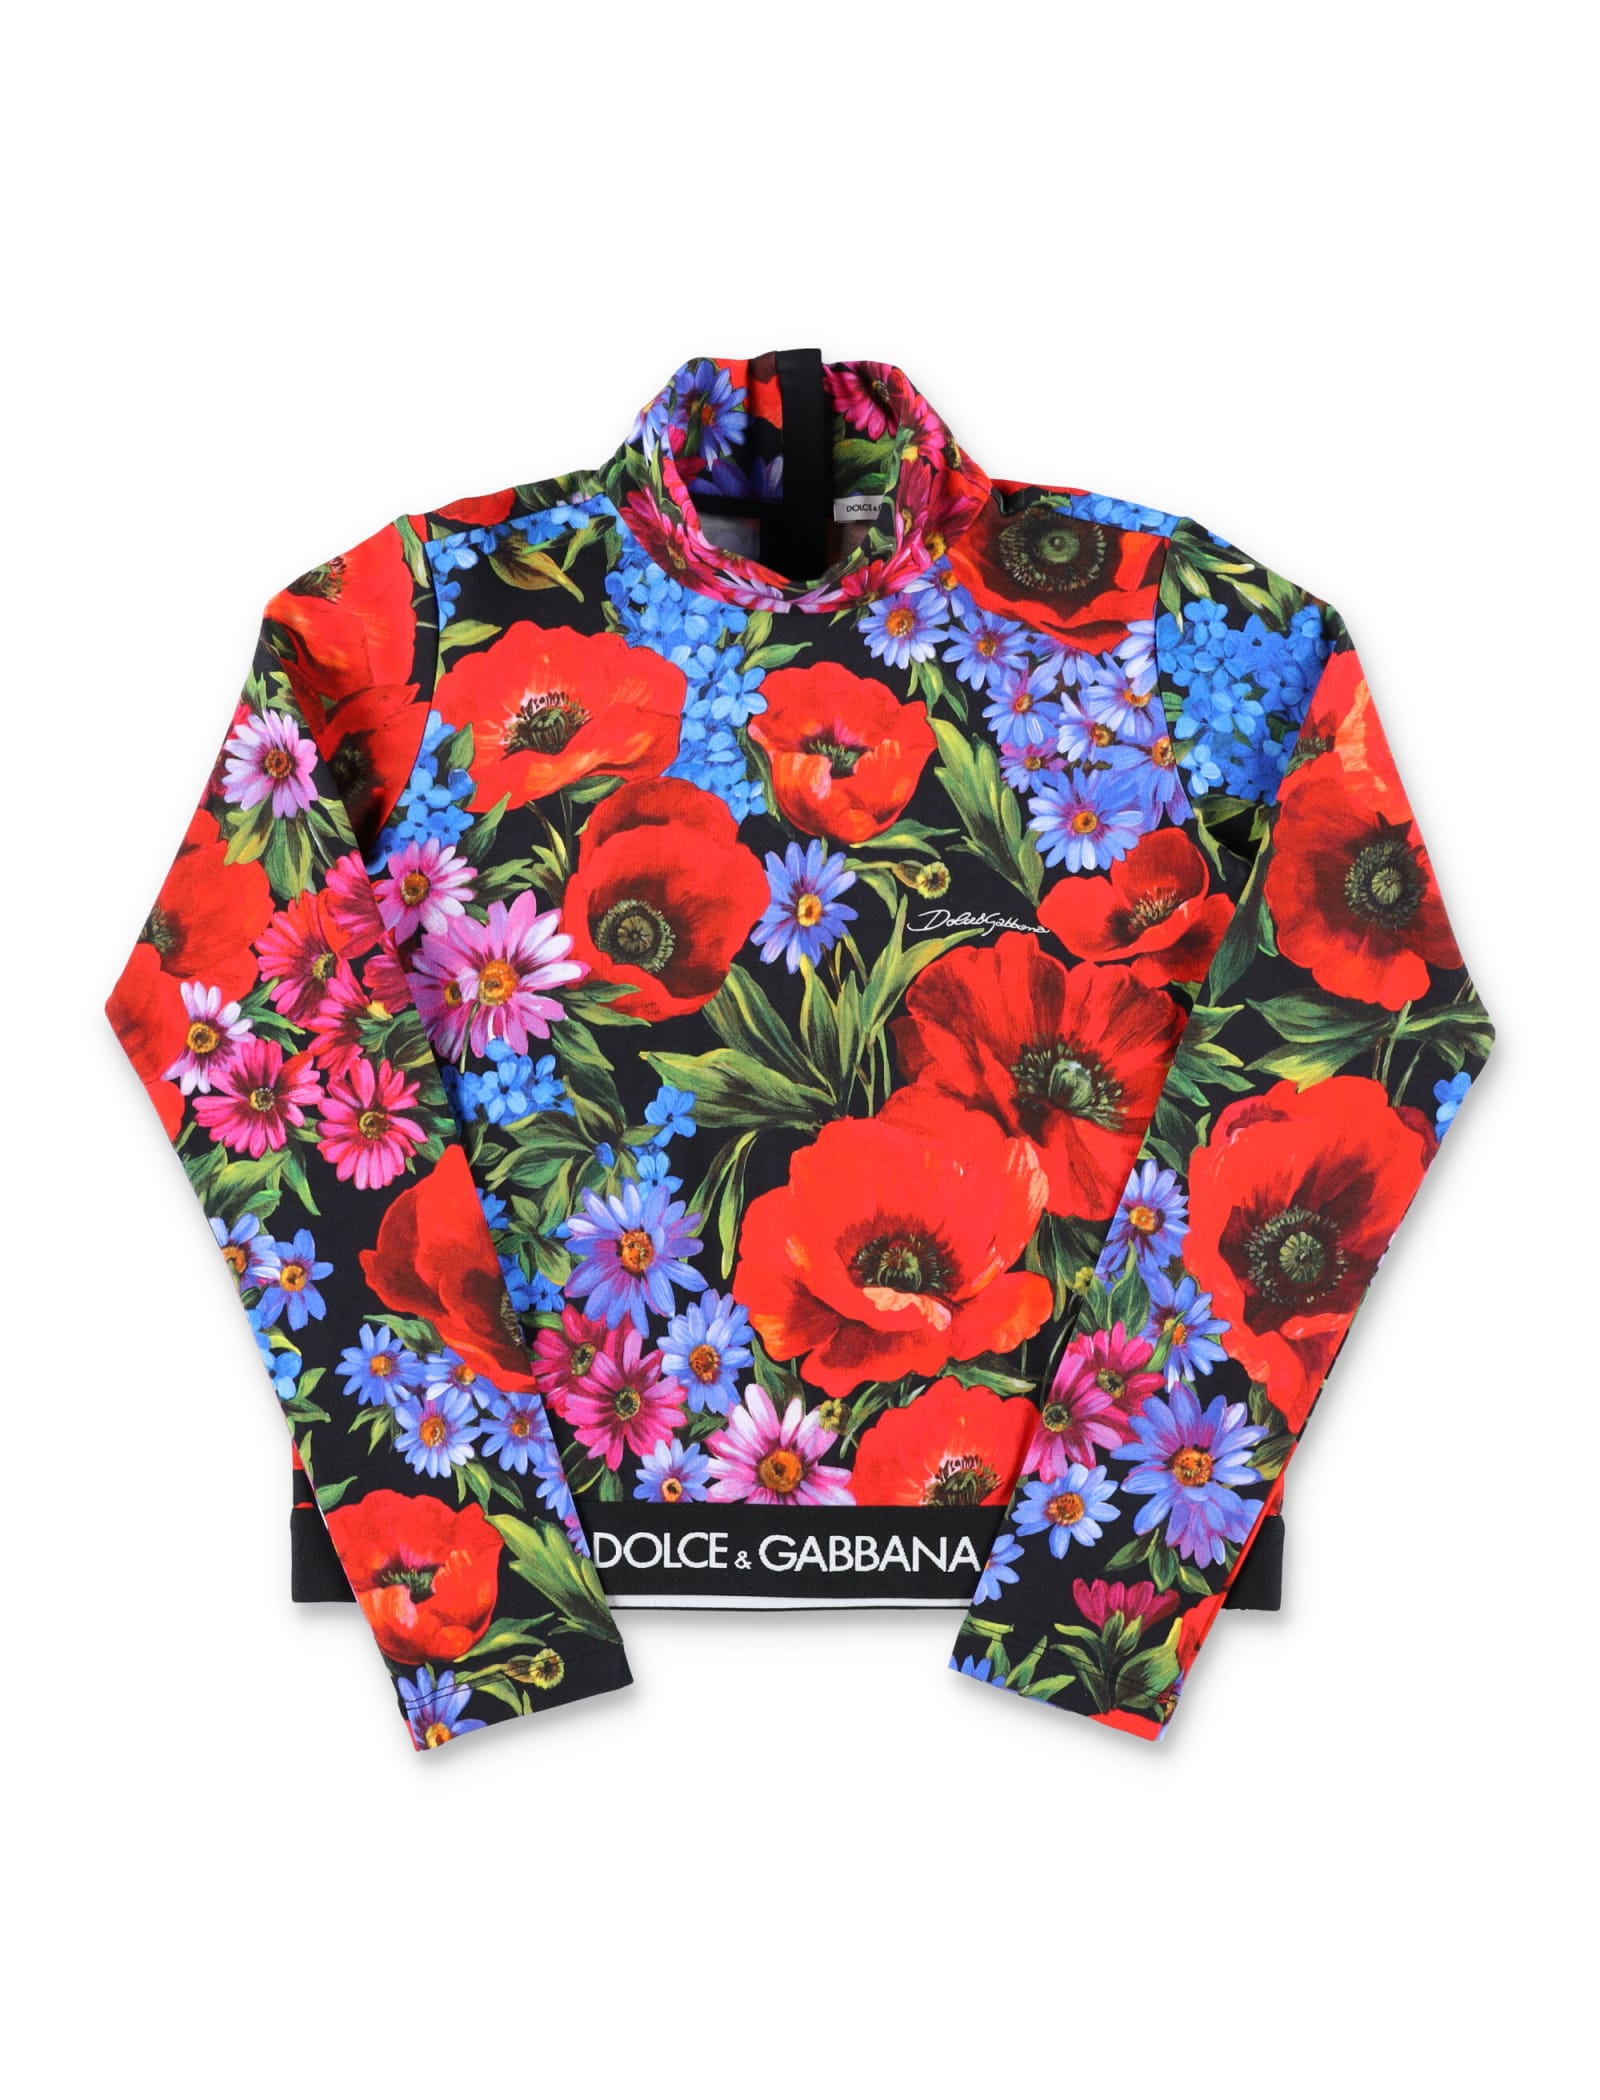 Dolce & Gabbana High Neck Floral Print T-shirt